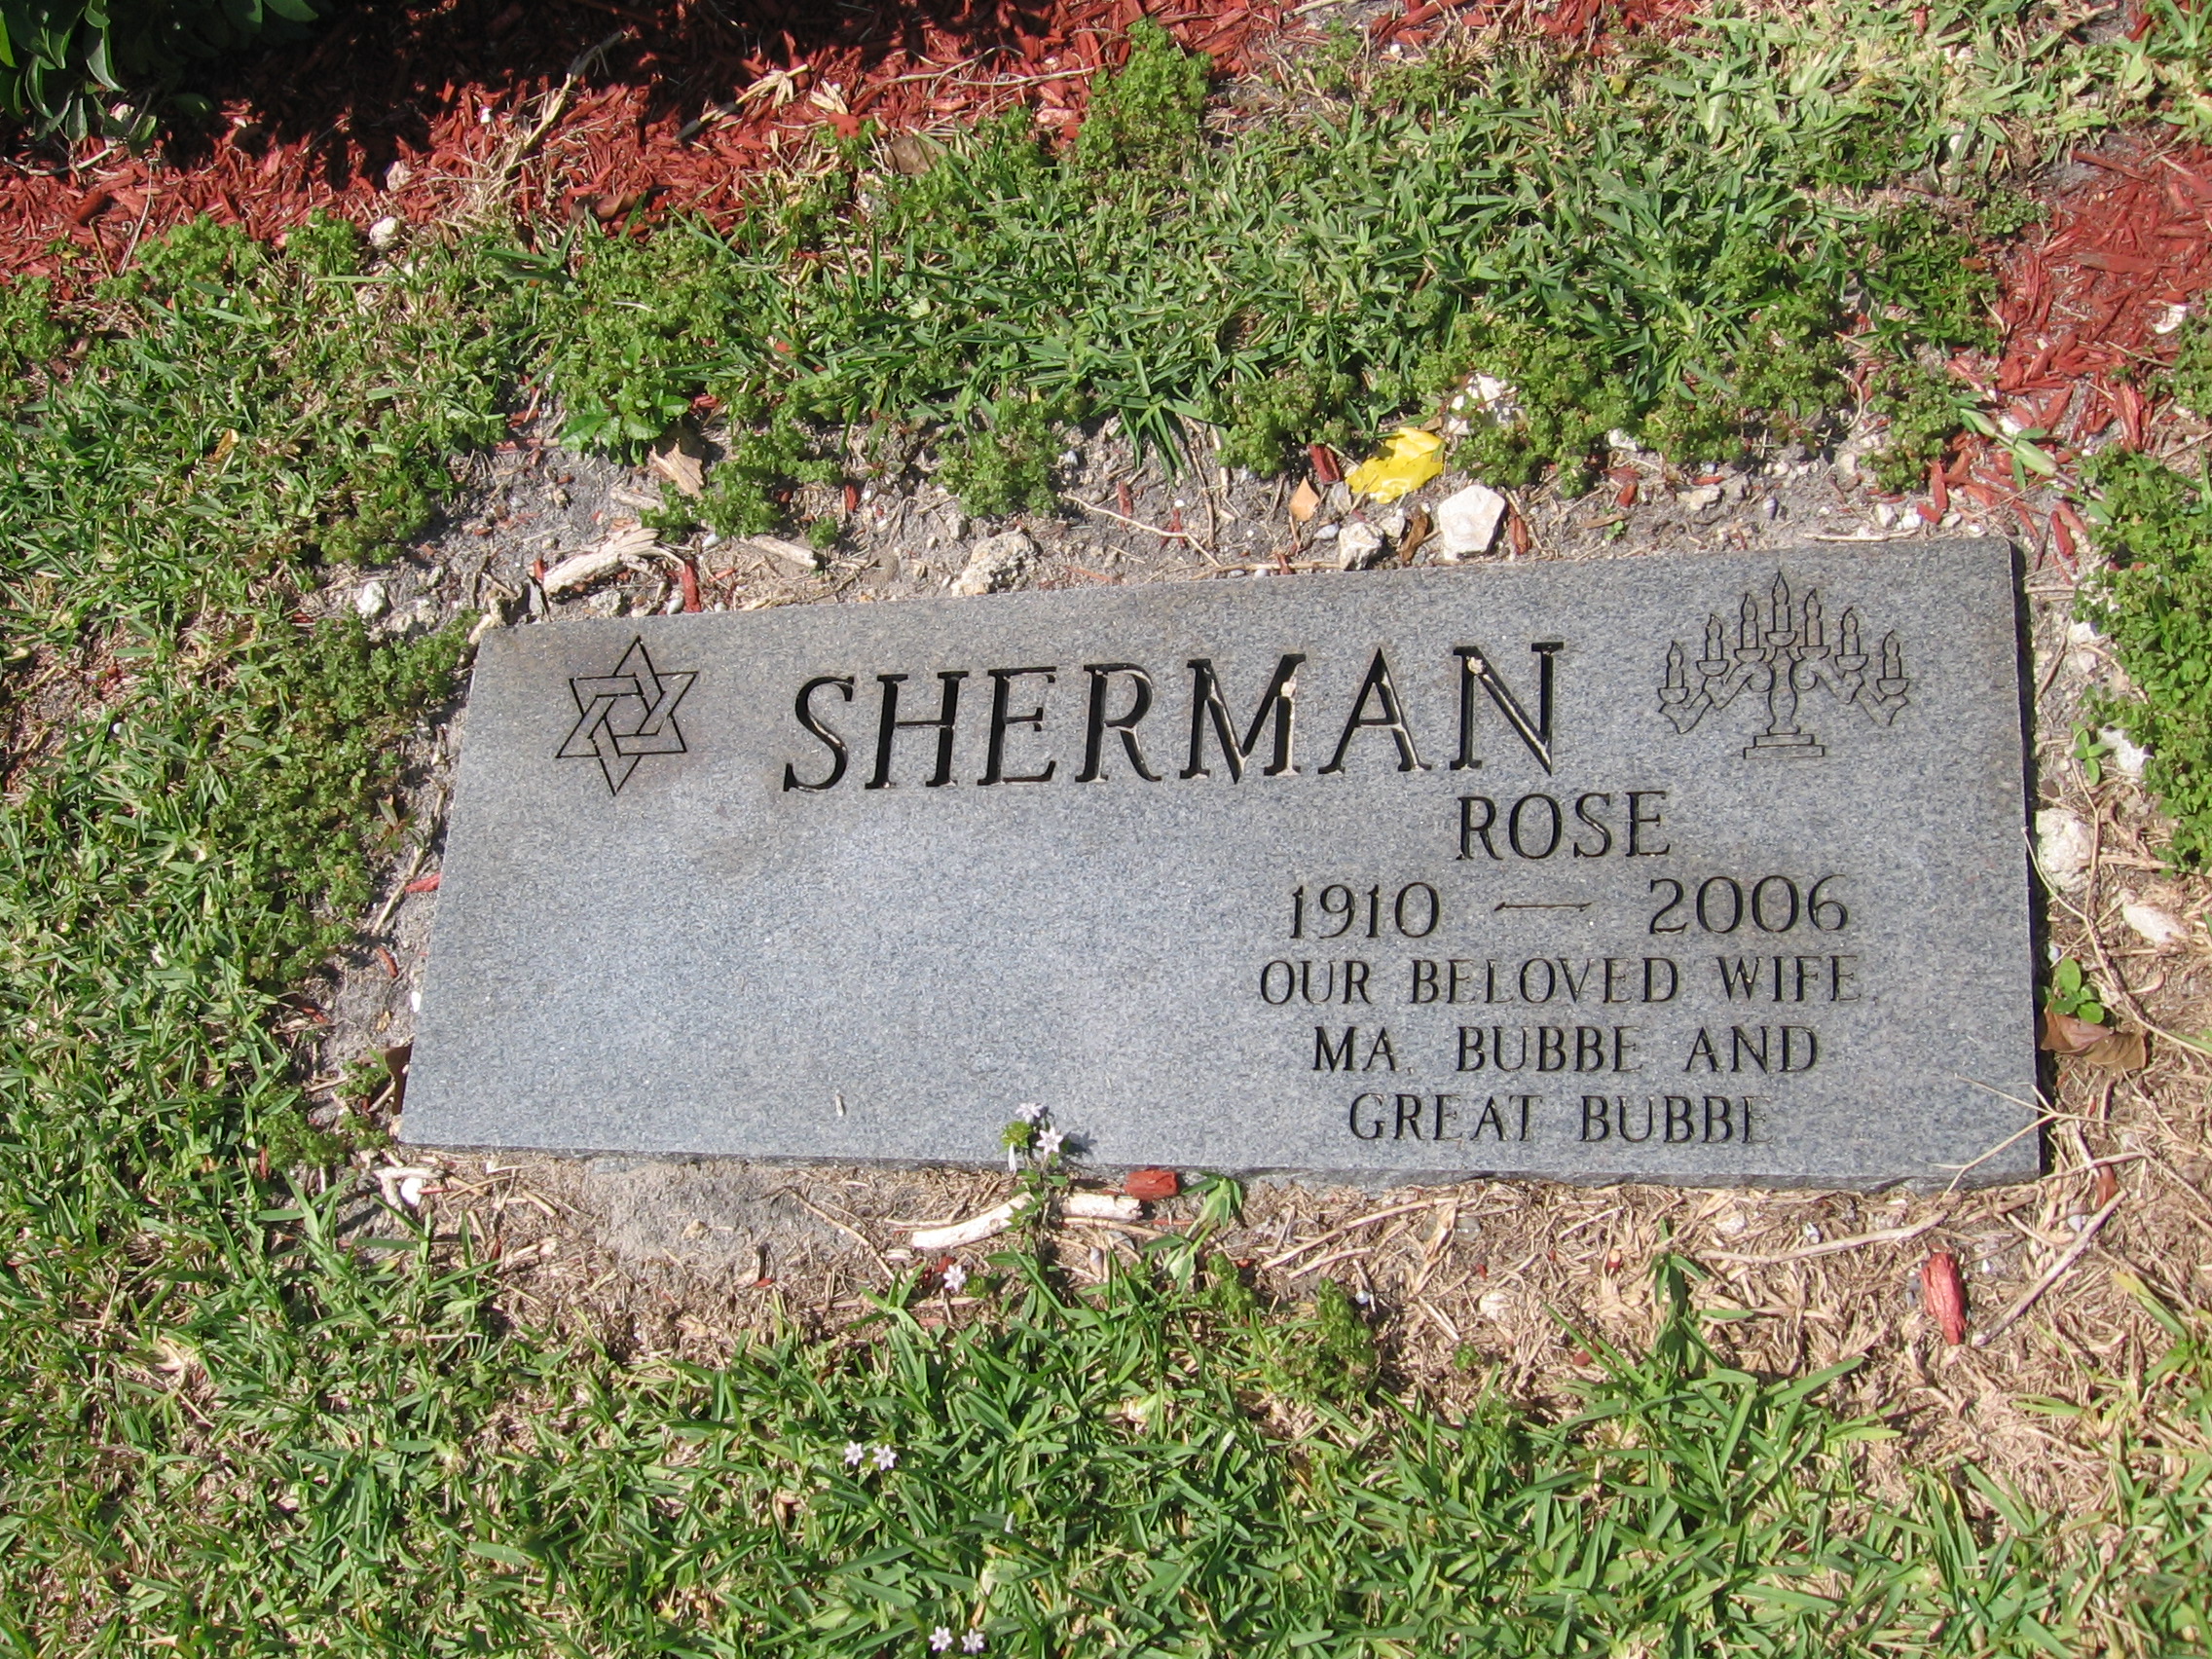 Rose Sherman